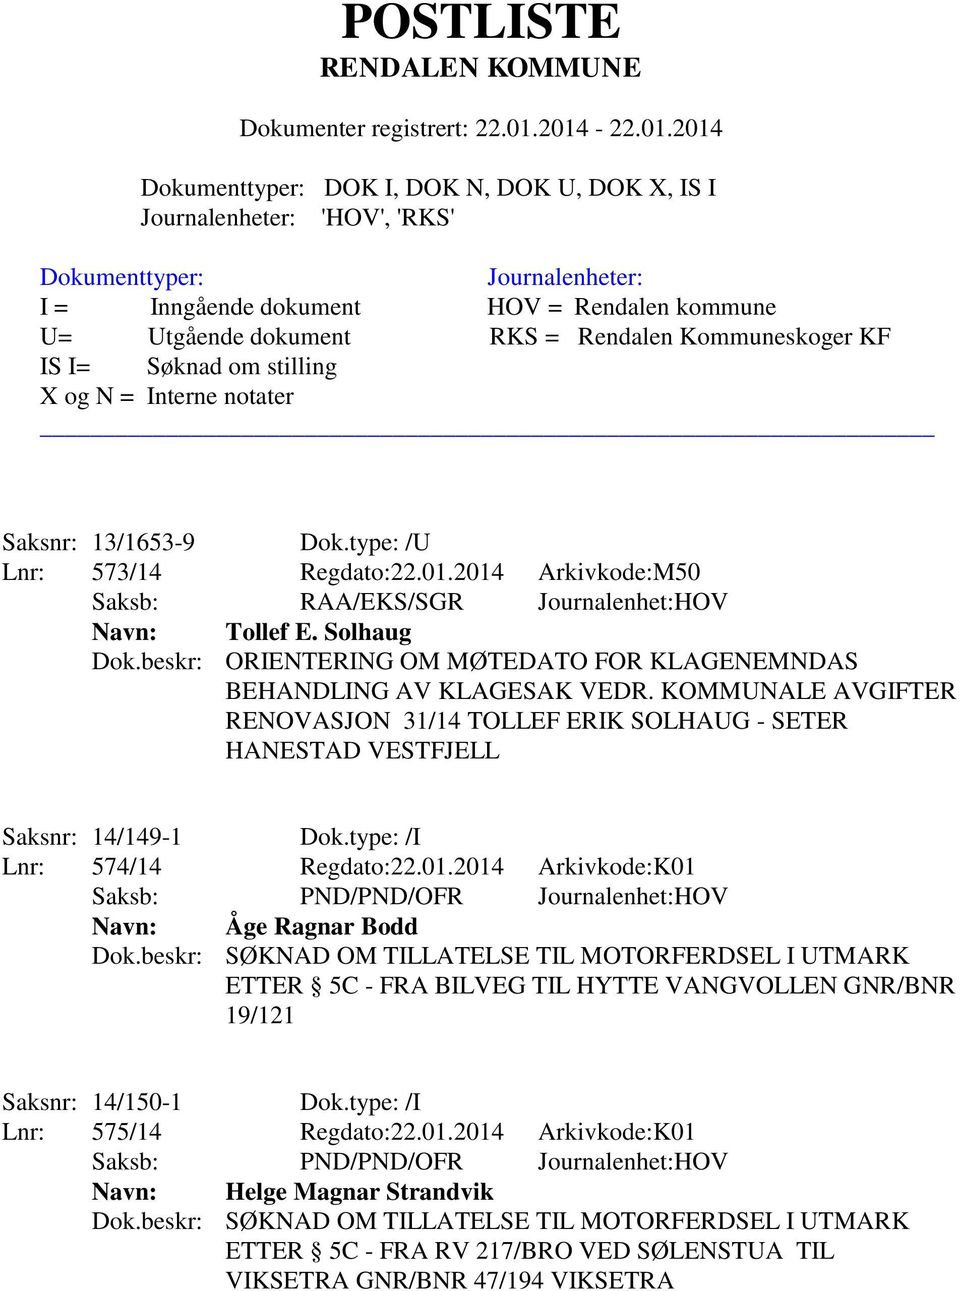 2014 Arkivkode:K01 Saksb: PND/PND/OFR Journalenhet:HOV Navn: Åge Ragnar Bodd Dok.